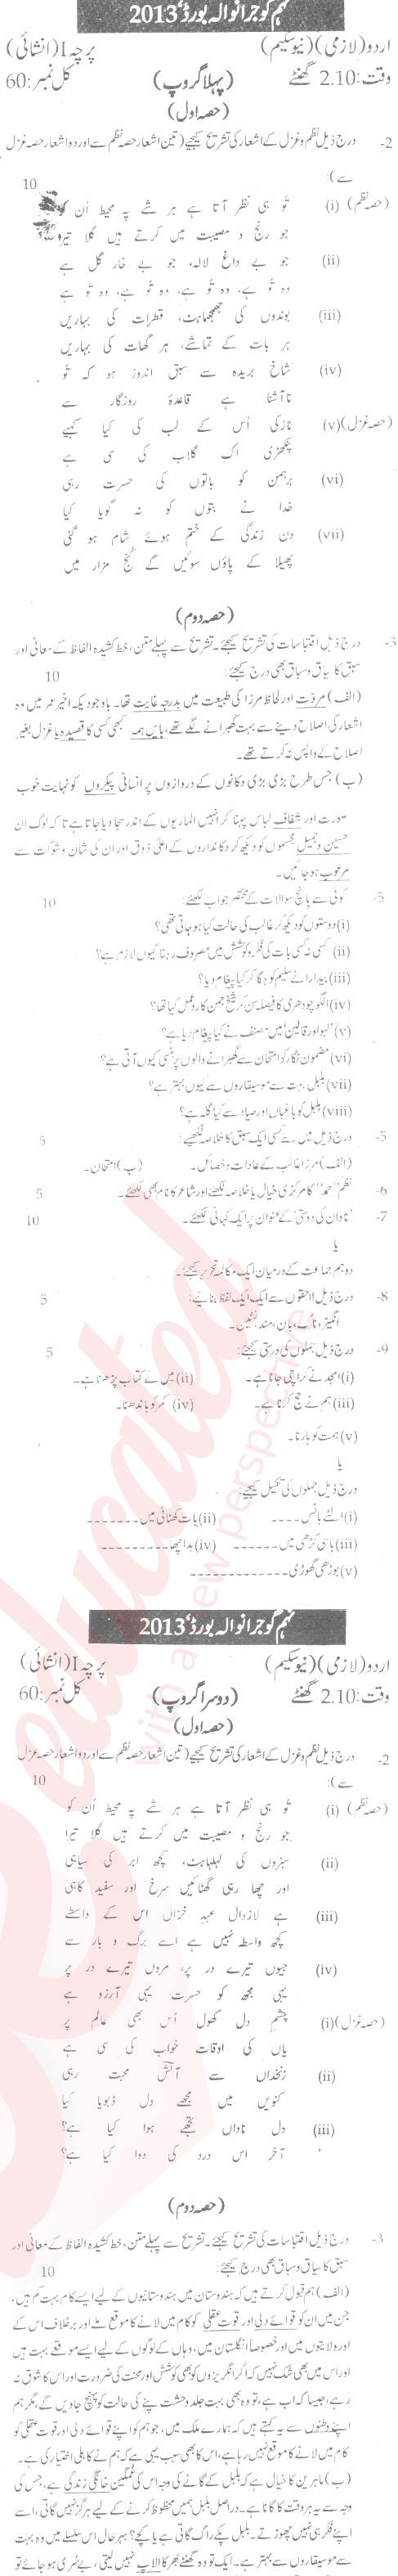 Urdu 9th Urdu Medium Past Paper Group 2 BISE Gujranwala 2013